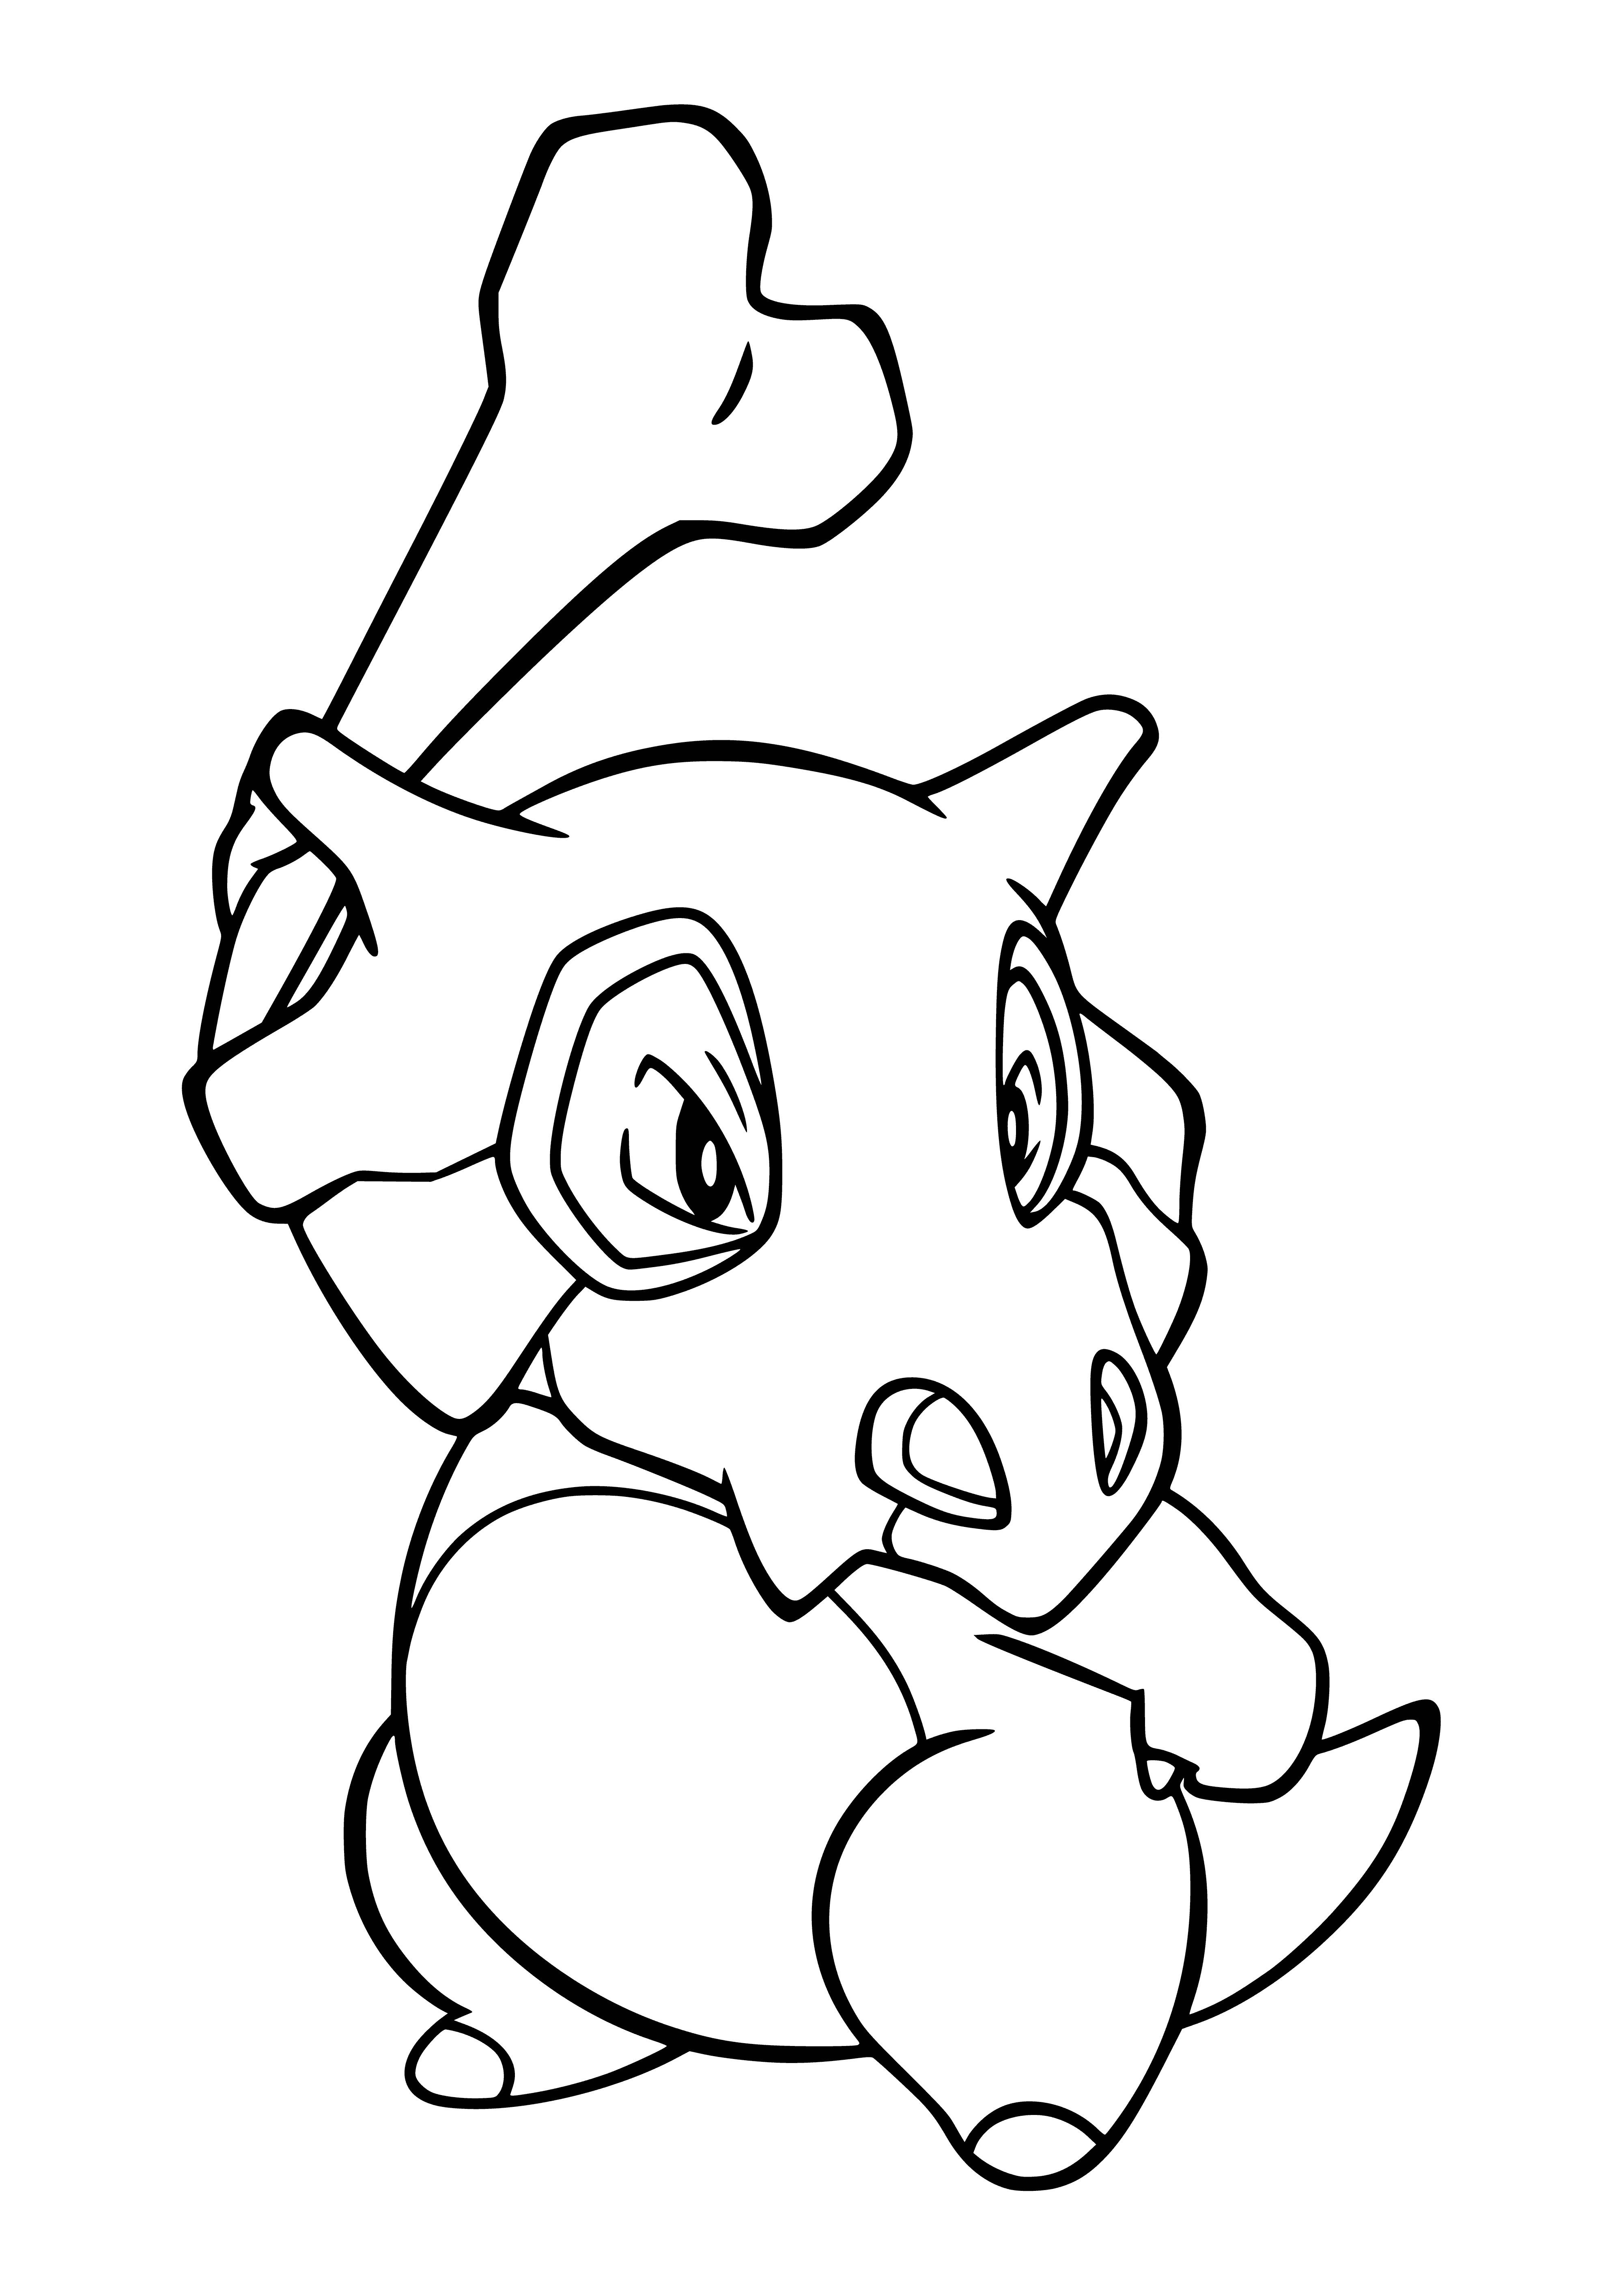 Pokemon Kubon (Cubone) coloring page